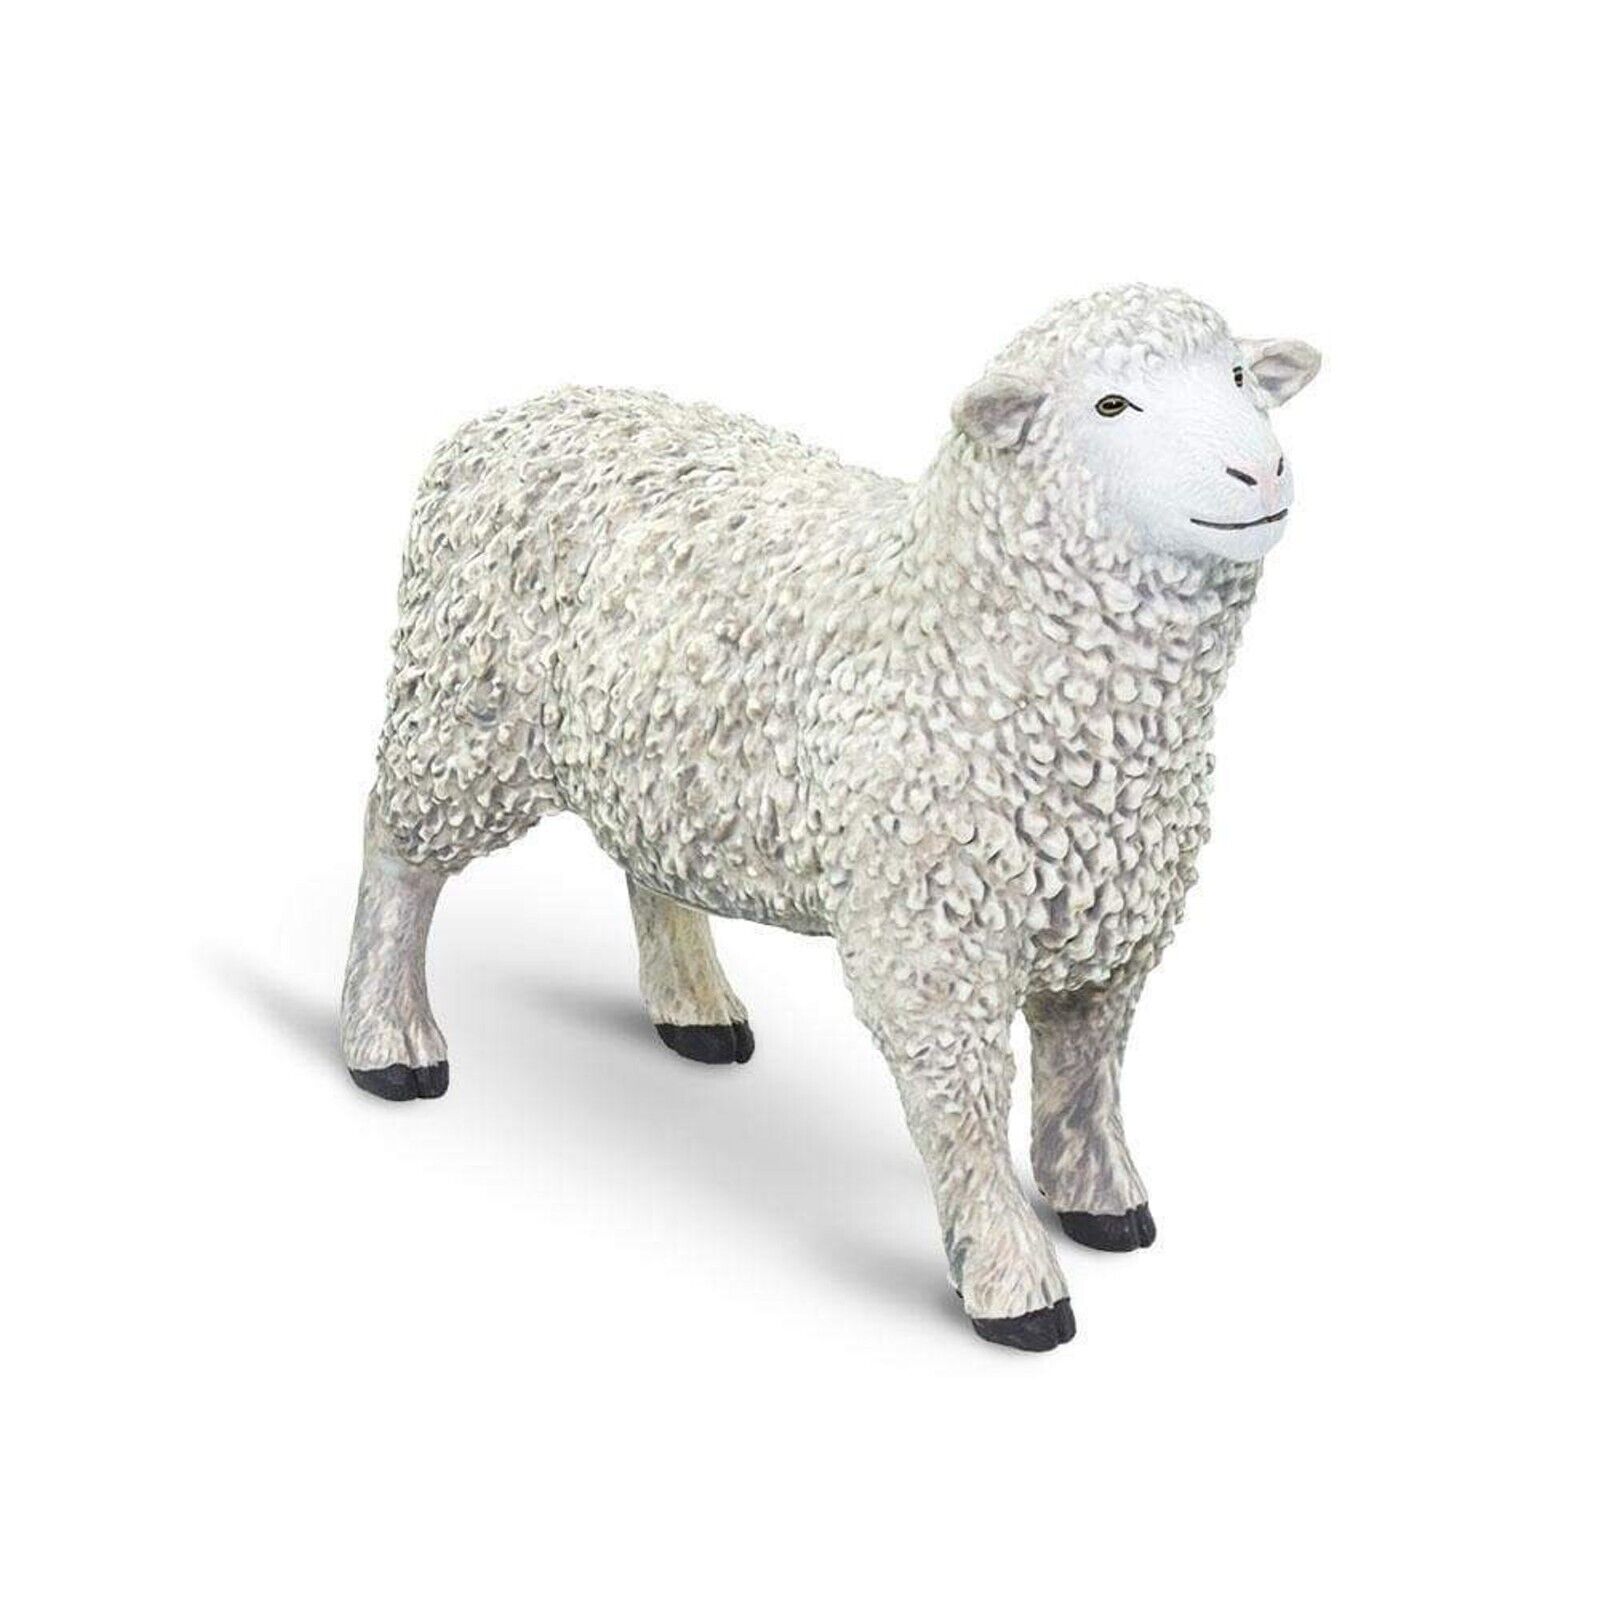 Sheep Figurine - 3.15in. L x 1.38in. W x 2.95in. H - 1 Piece (sl162429)